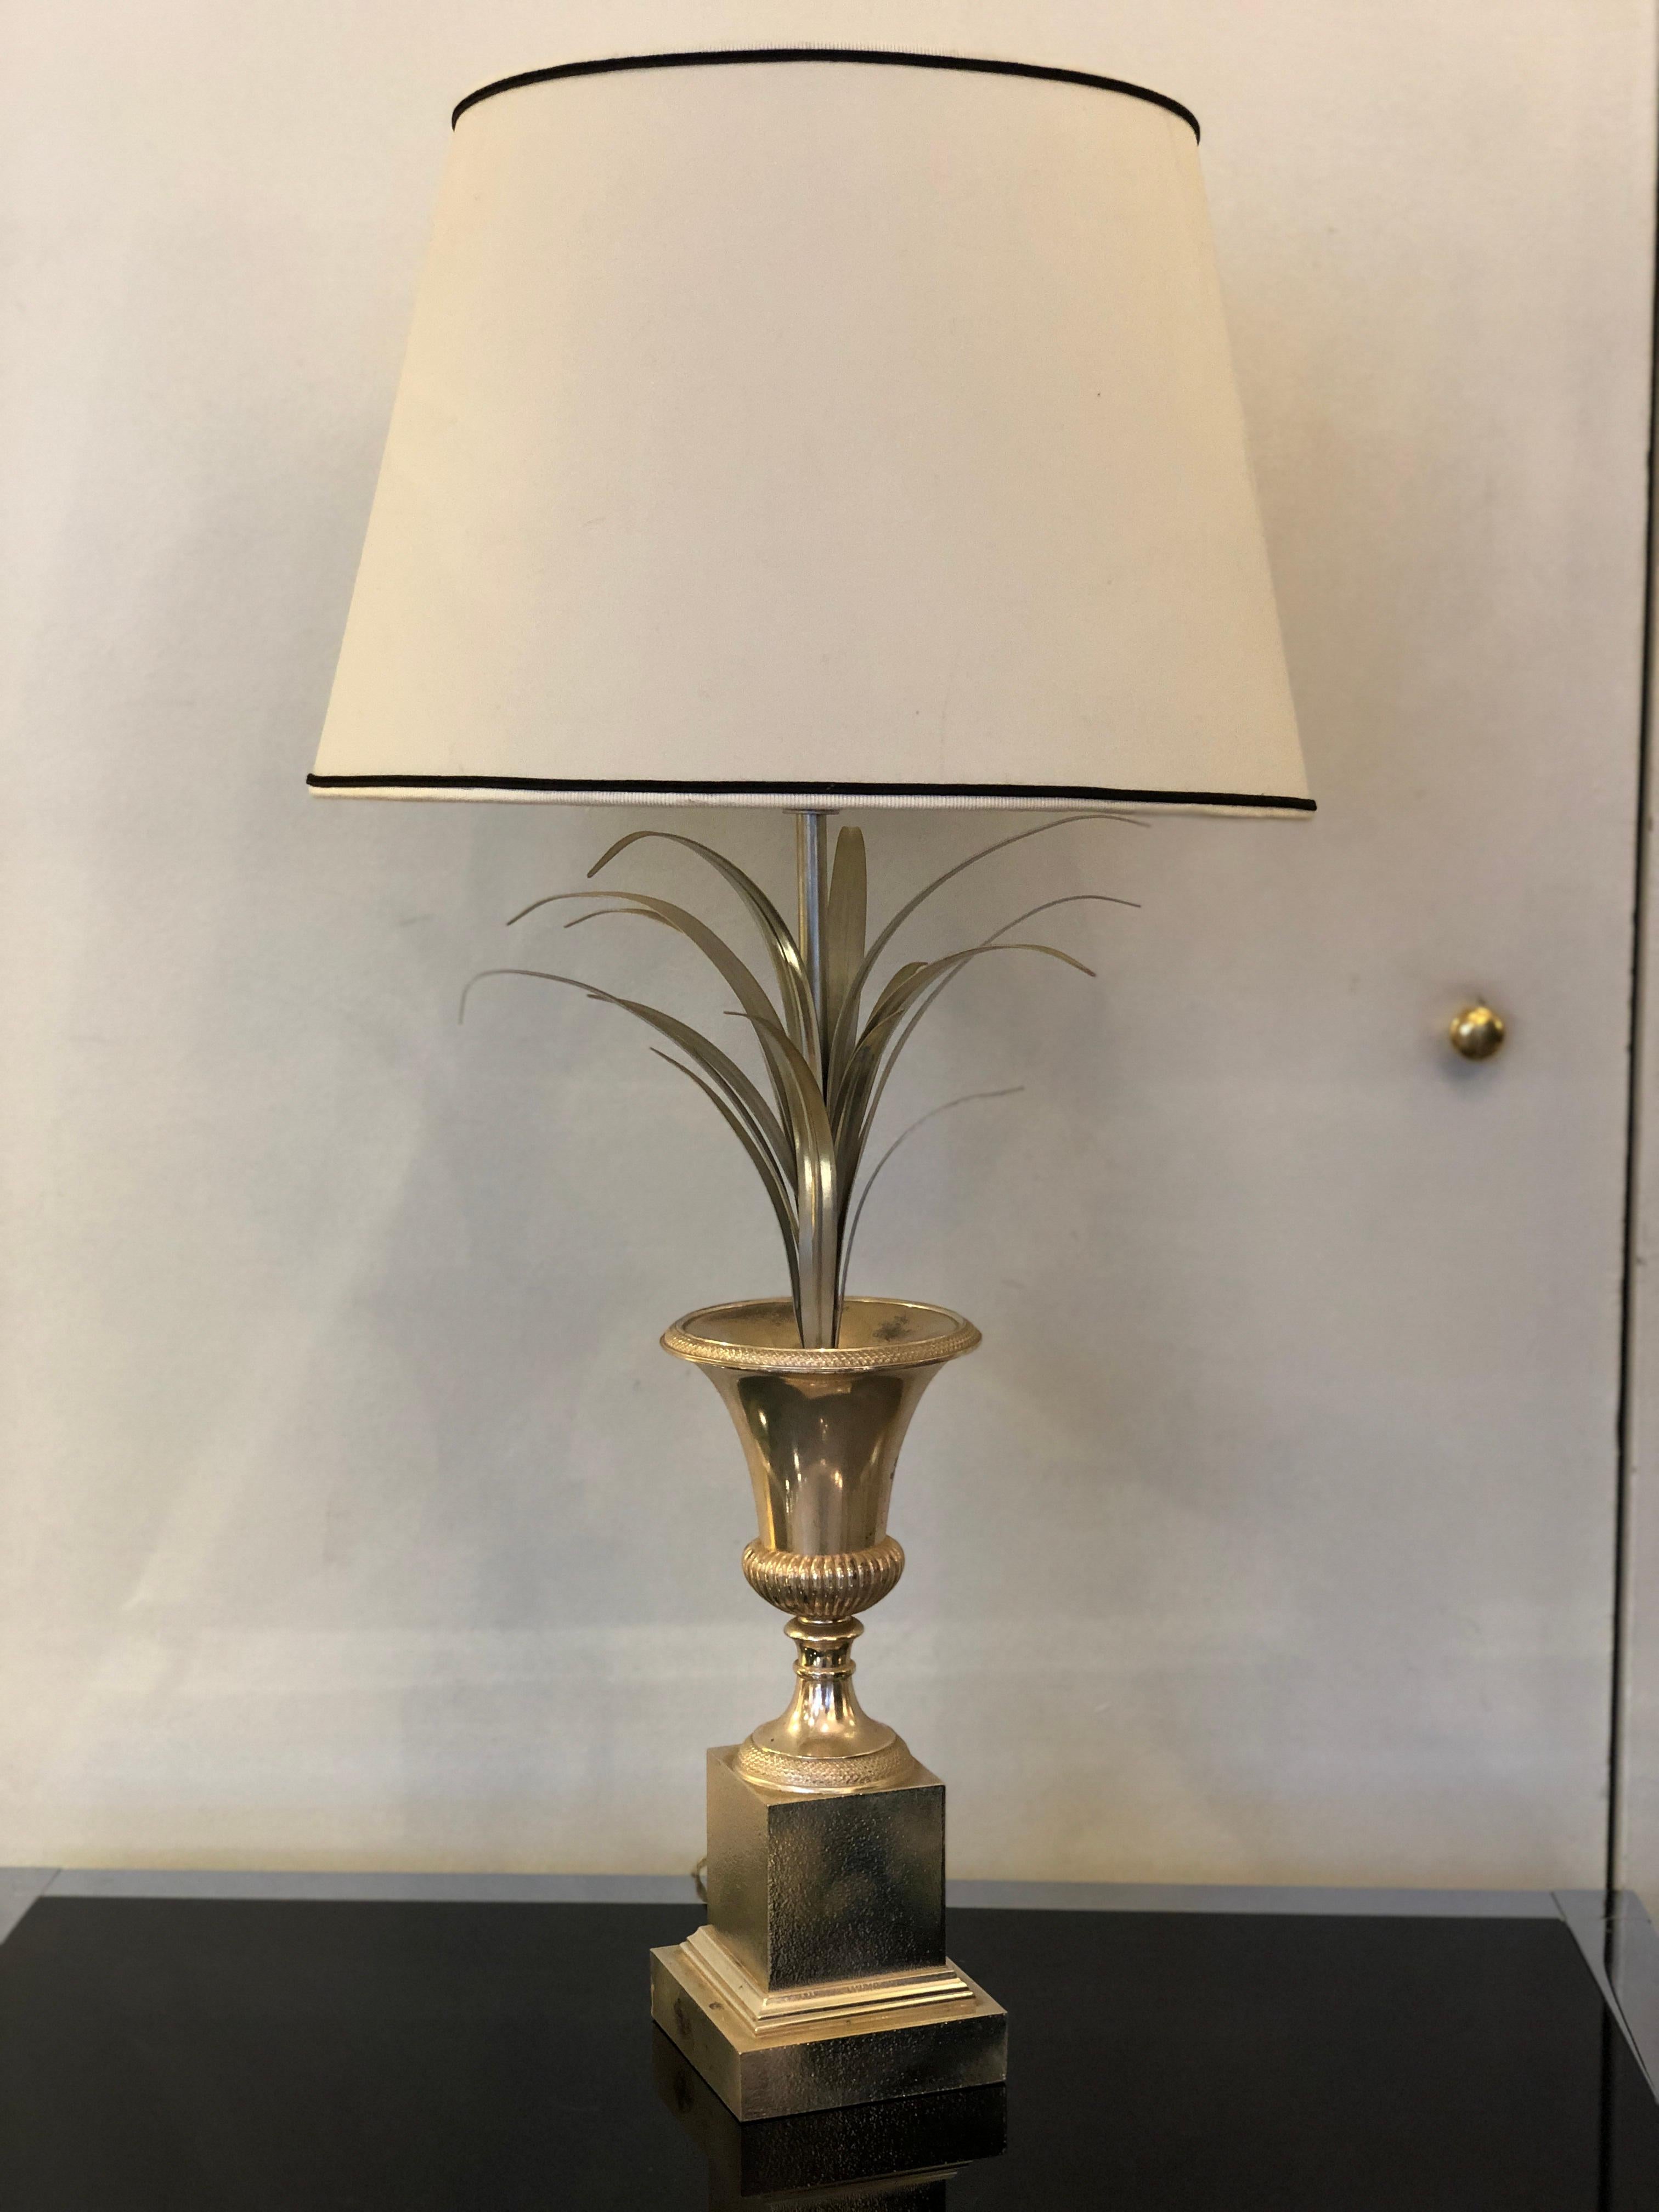 Lampe de table Charles e Fils en métal argenté, vase à fleurs de palmier, fabriquée en France vers les années 1960.
La lampe, qui présente la forme typique d'un vase de fleurs, a été fabriquée par Charles et Fils en France dans les années